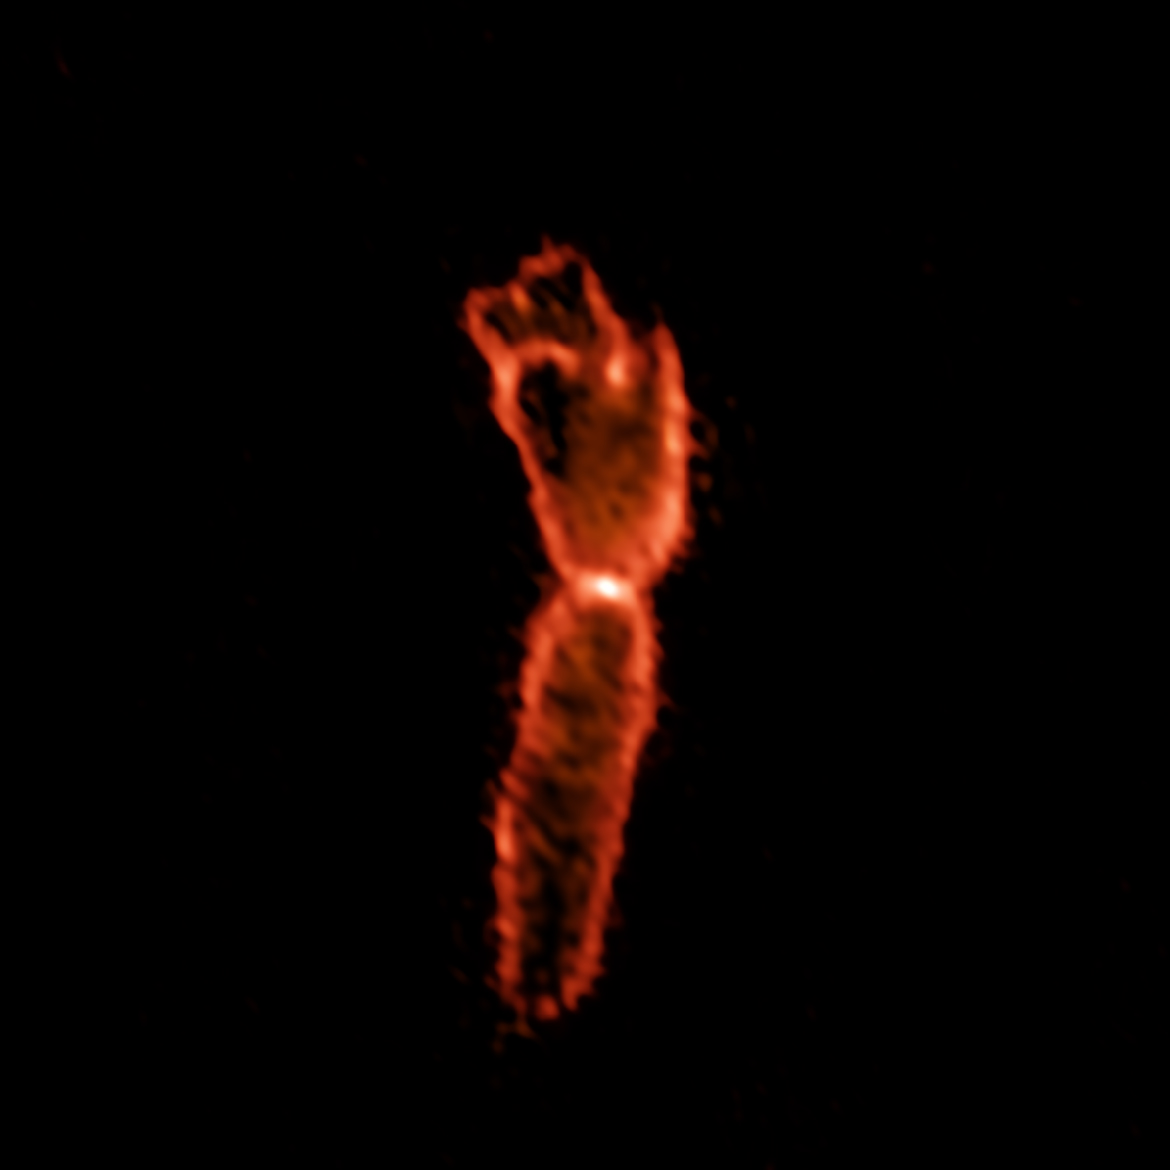 The Boomerang Nebula